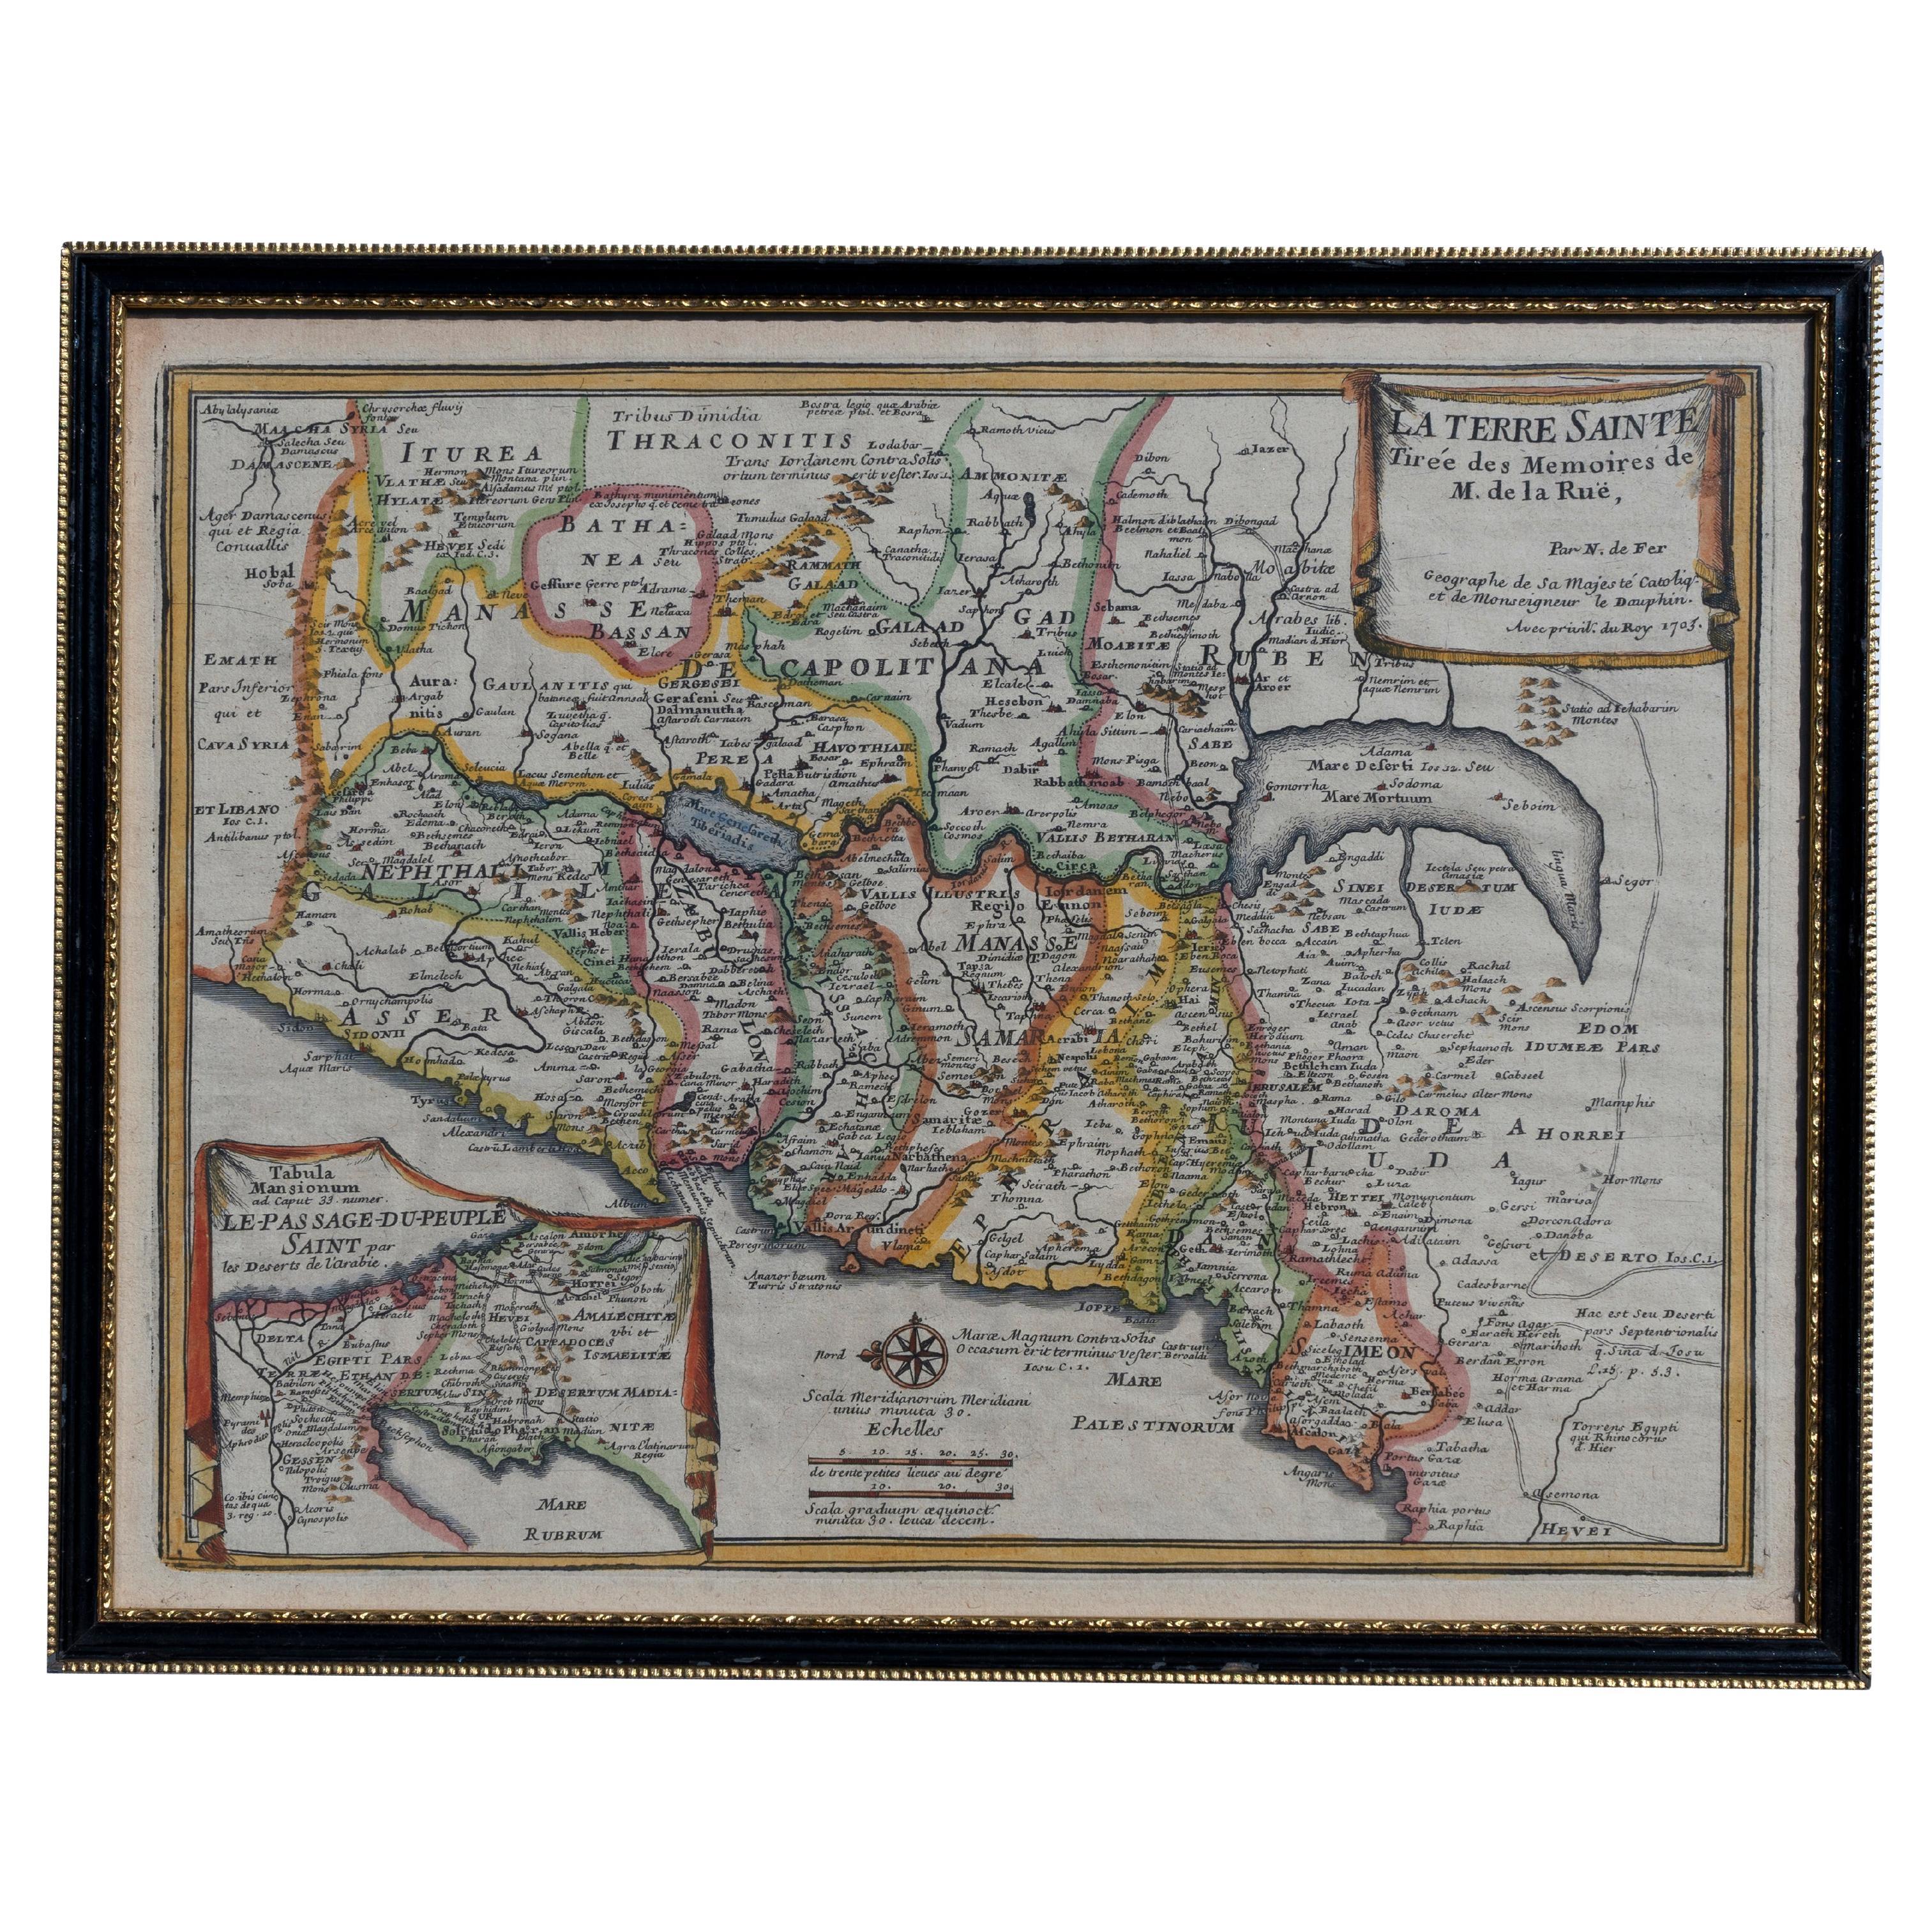 Carte Holy Land La Terre Sainte gravée van Loon publiée N de Fer 1703 français